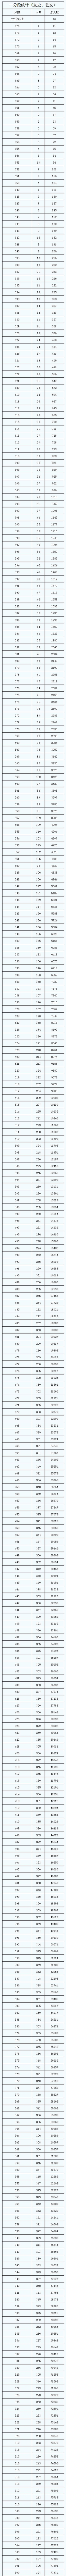 陕西2021高考一分一段表完整版 陕西高考分数排名位序查询最新